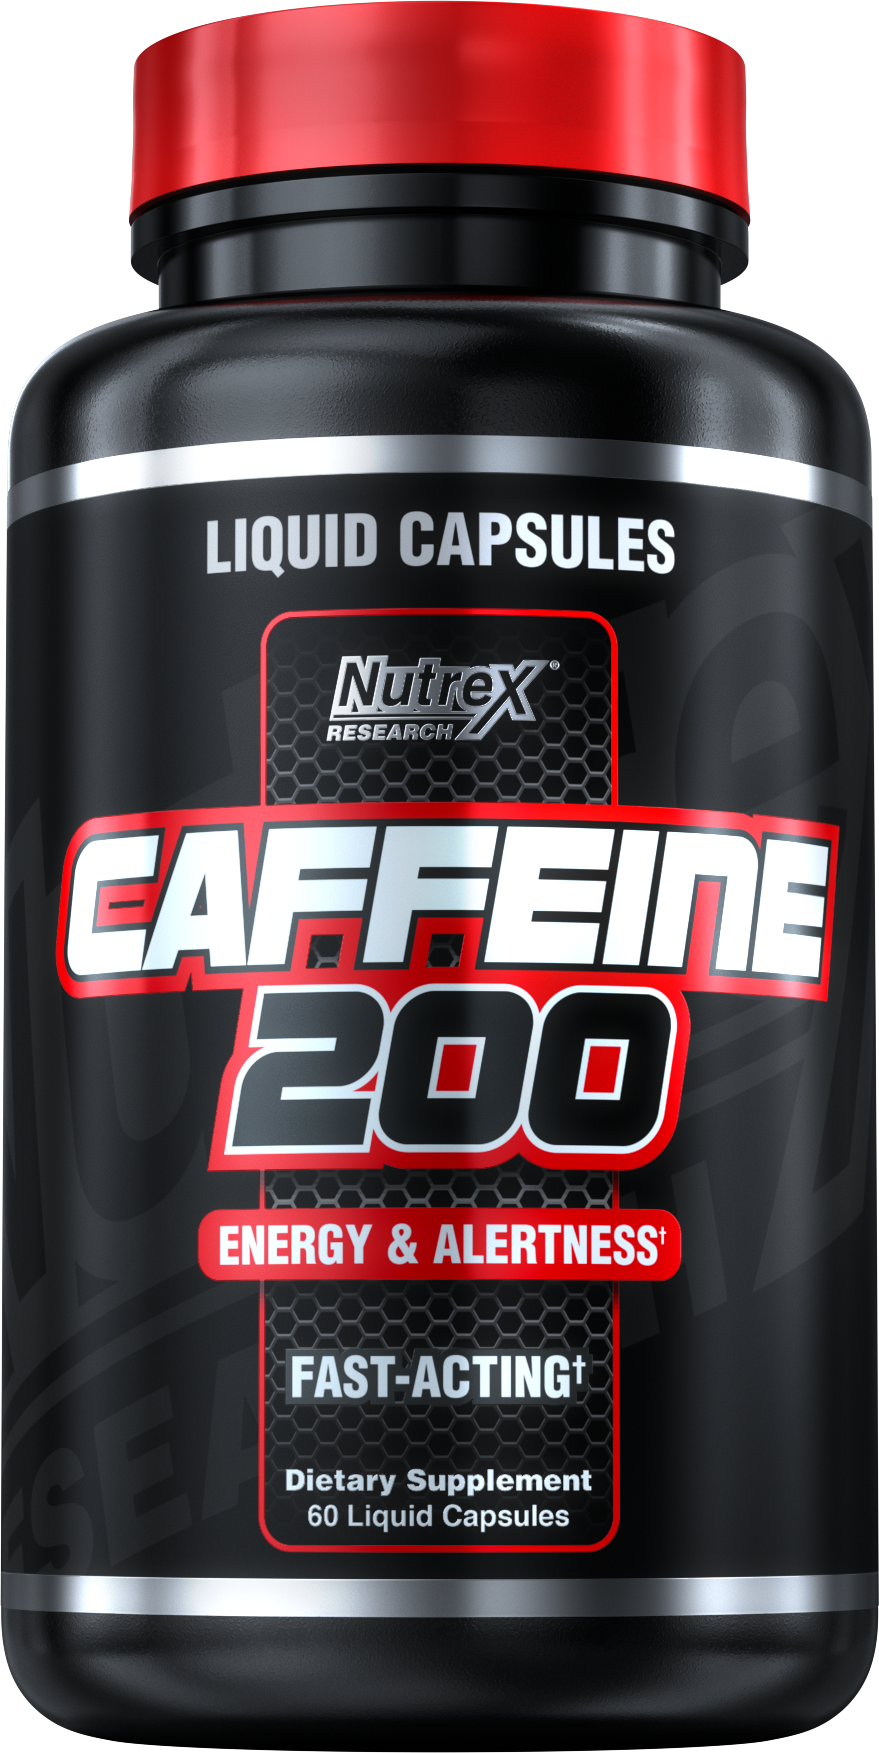 Спортпит Caffeine 200. Nutrex Caffeine 200 (60 кап). Кофеин спортпит. Кофеин в таблетках спортивное питание. Кофеин комплекс